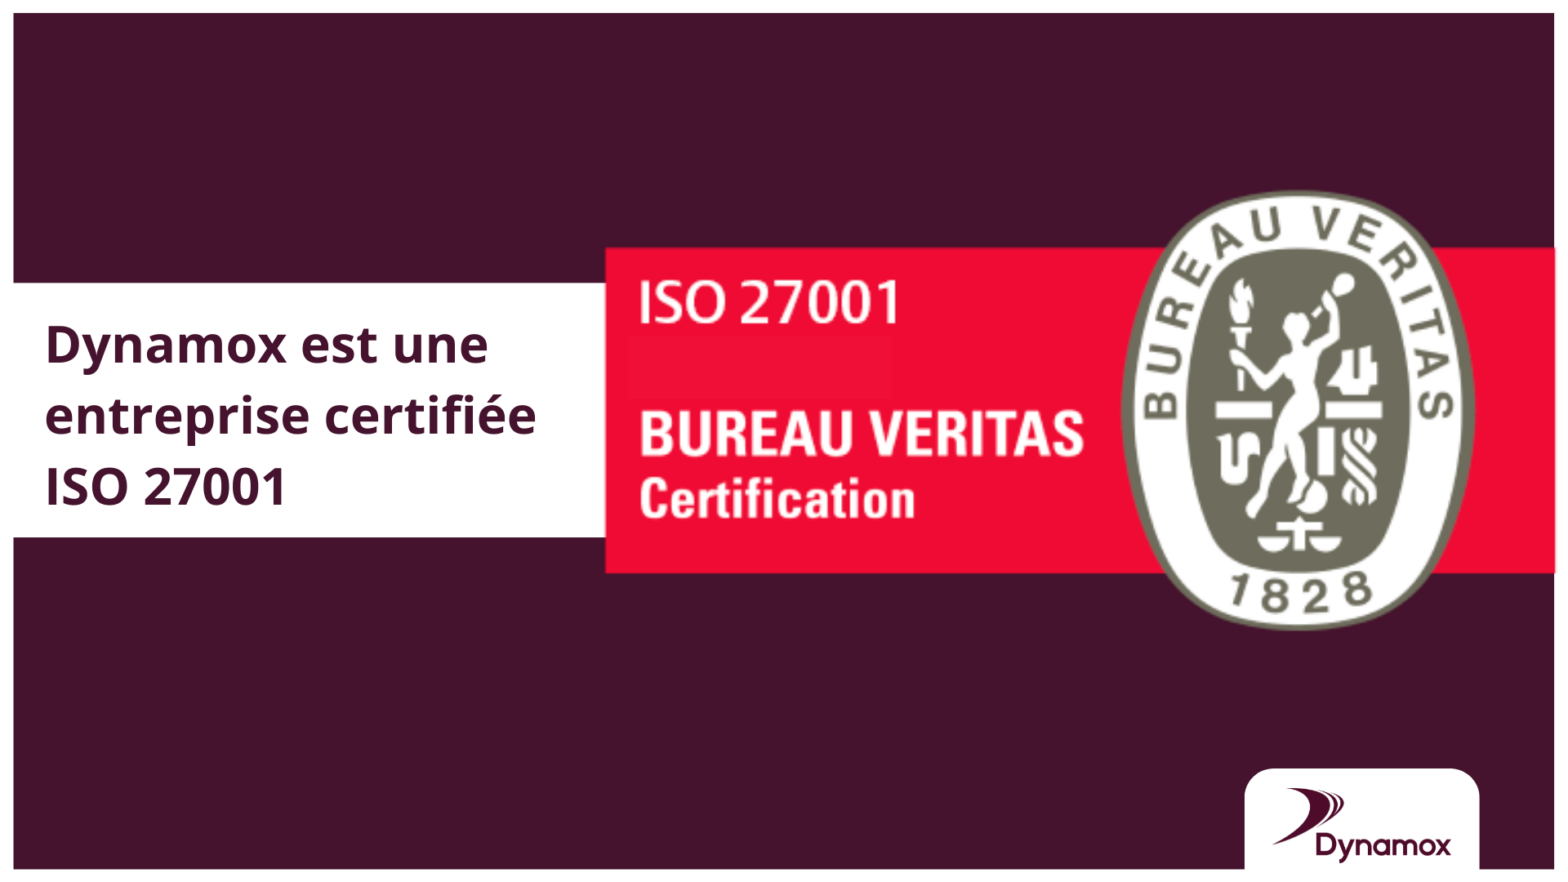 Dynamox est une entreprise certifiée ISO 27001